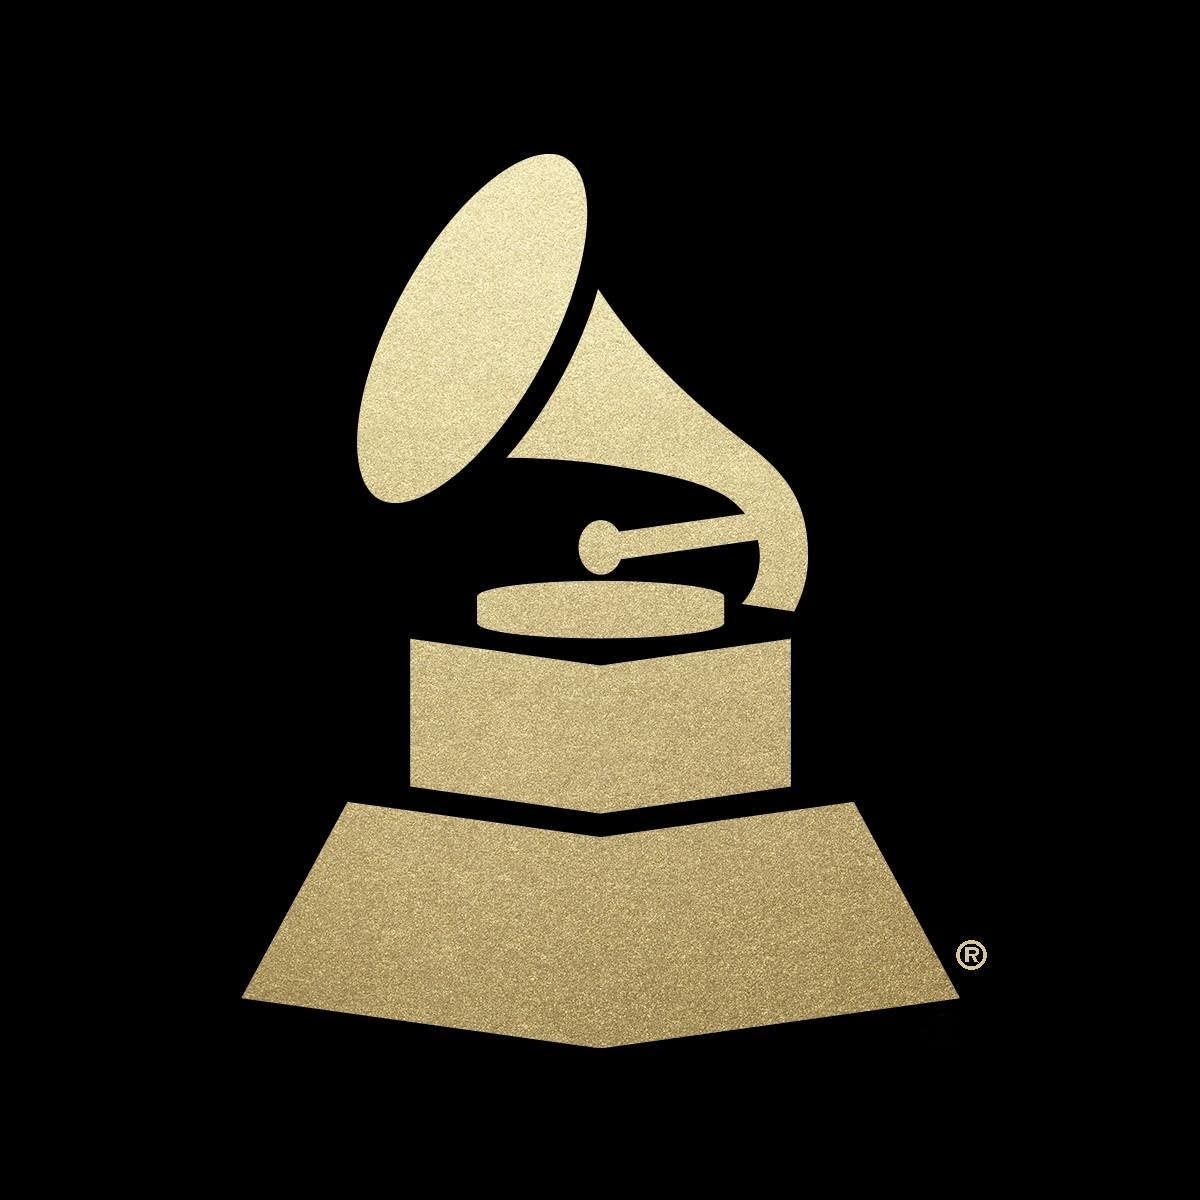 Grammy Logo - Coffee Break: Grammy nominees